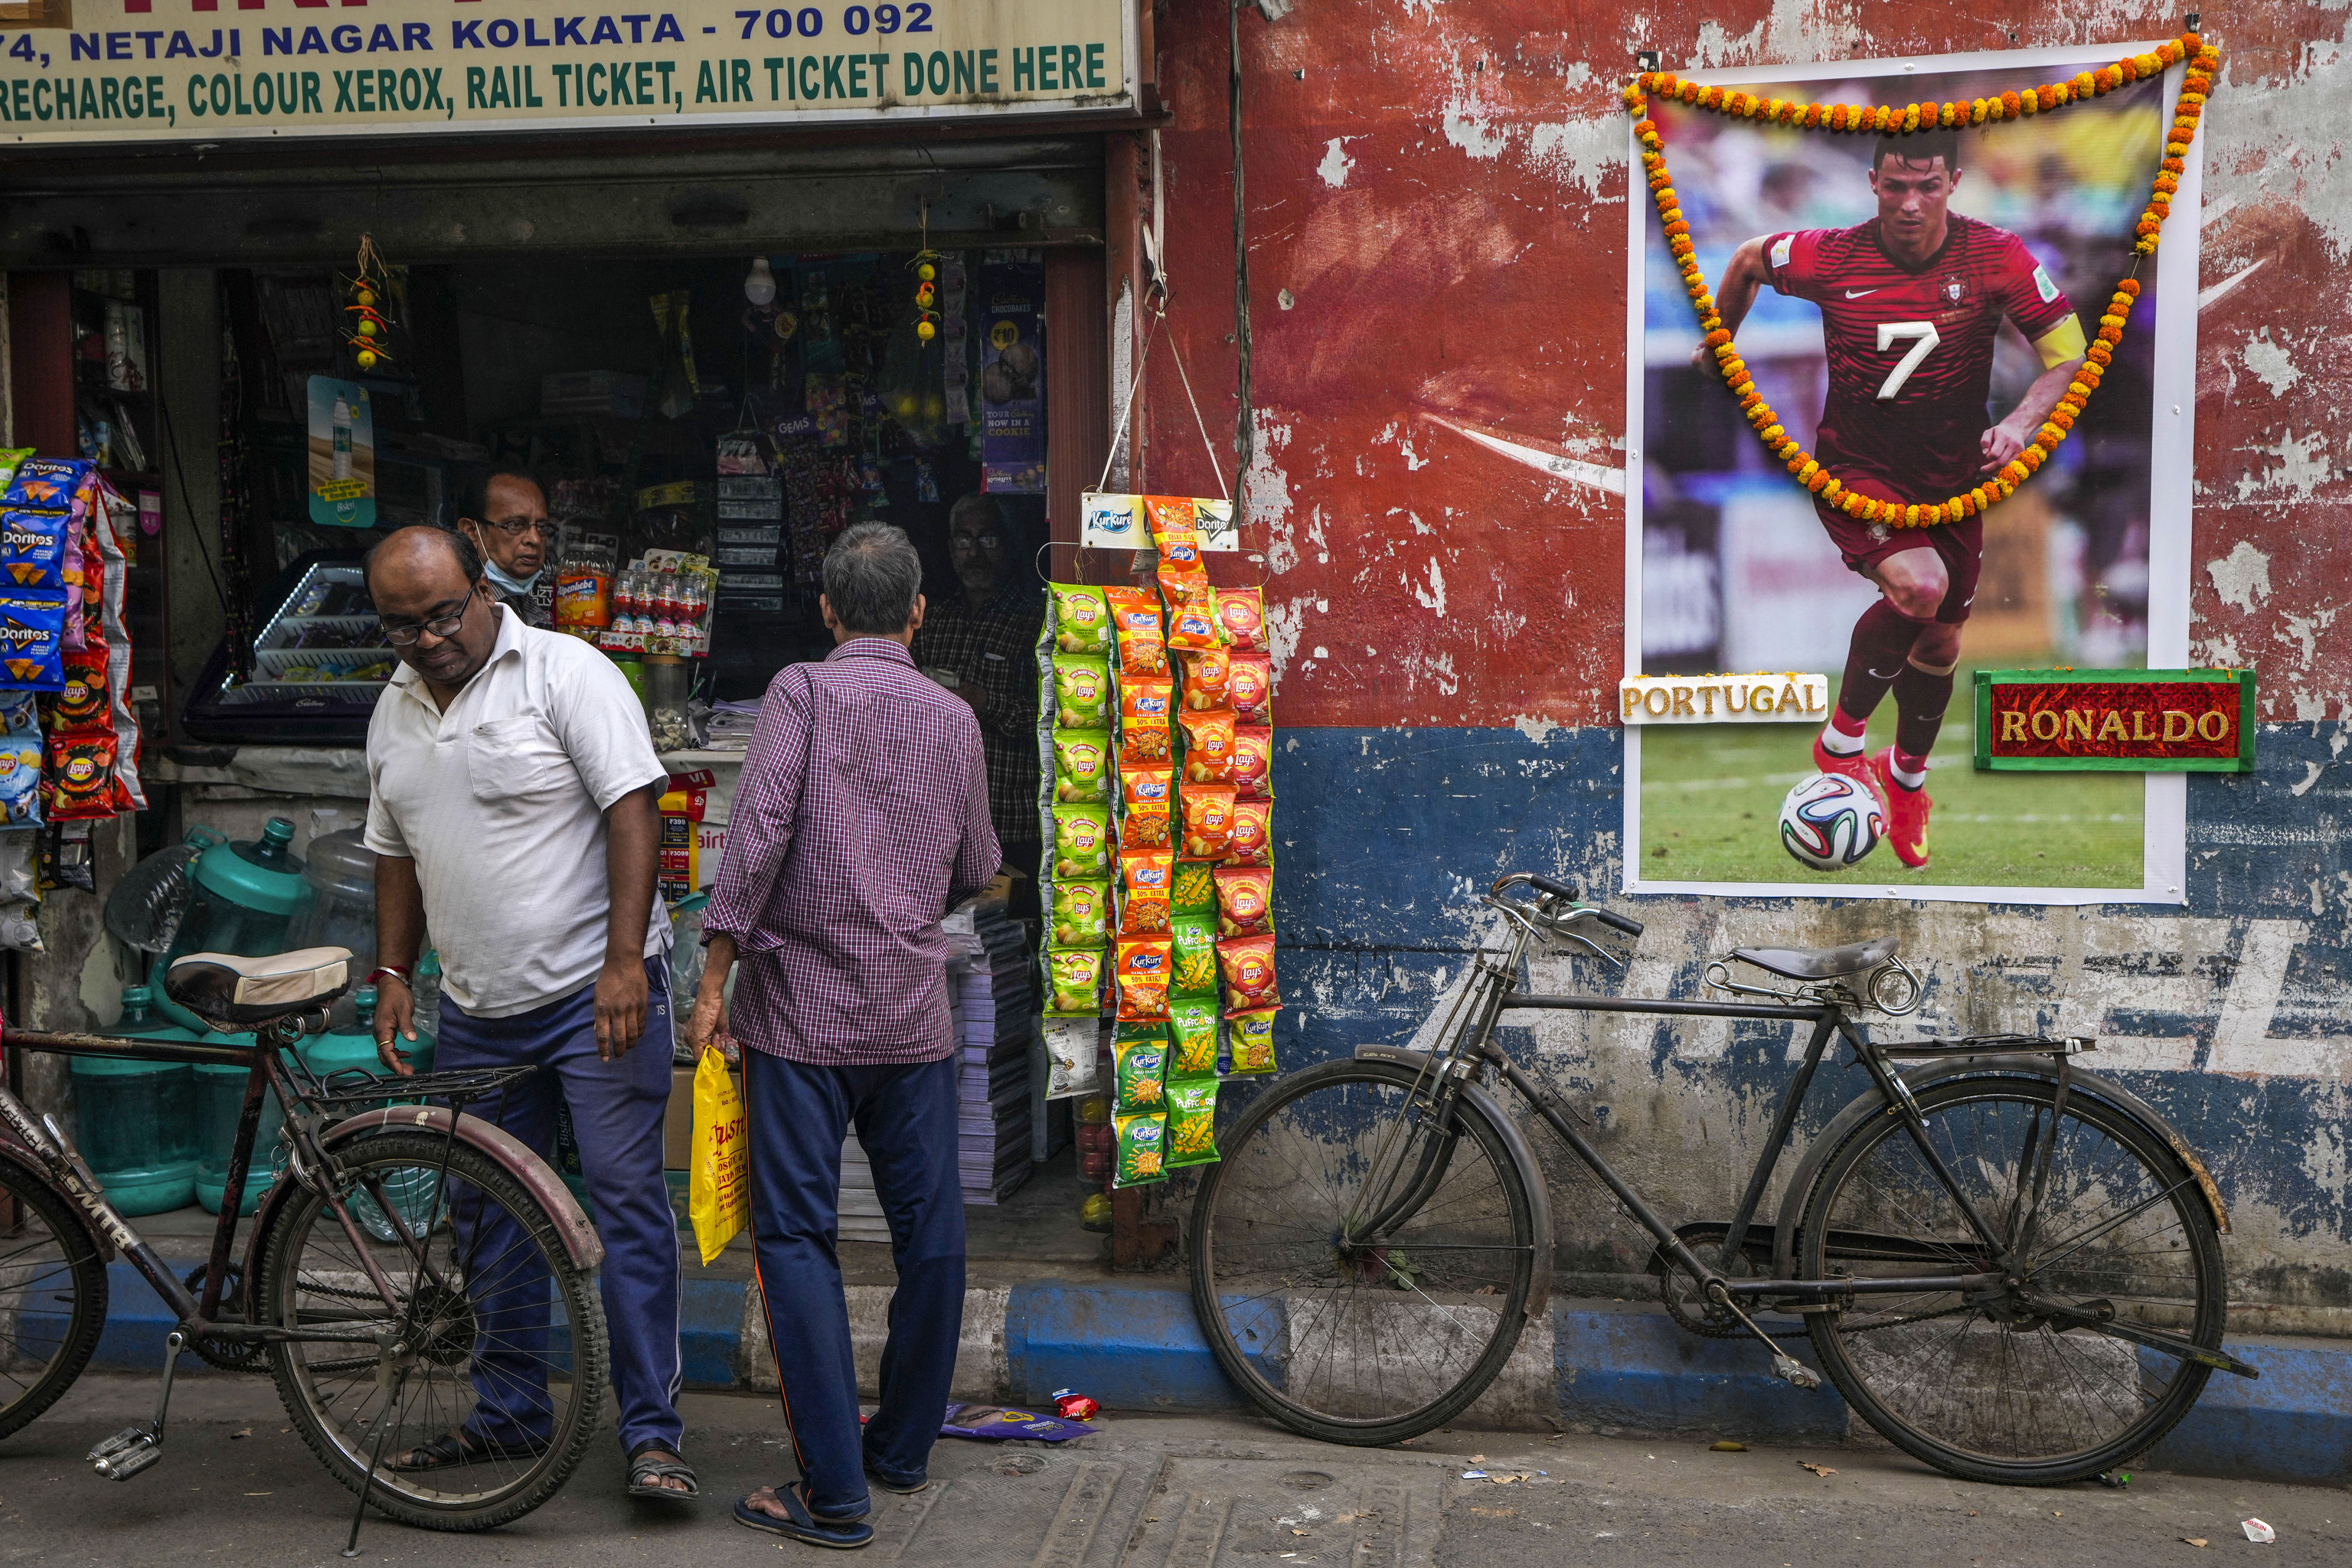 Imagen de Cristiano Ronaldo a la entrada de una tienda en la India.